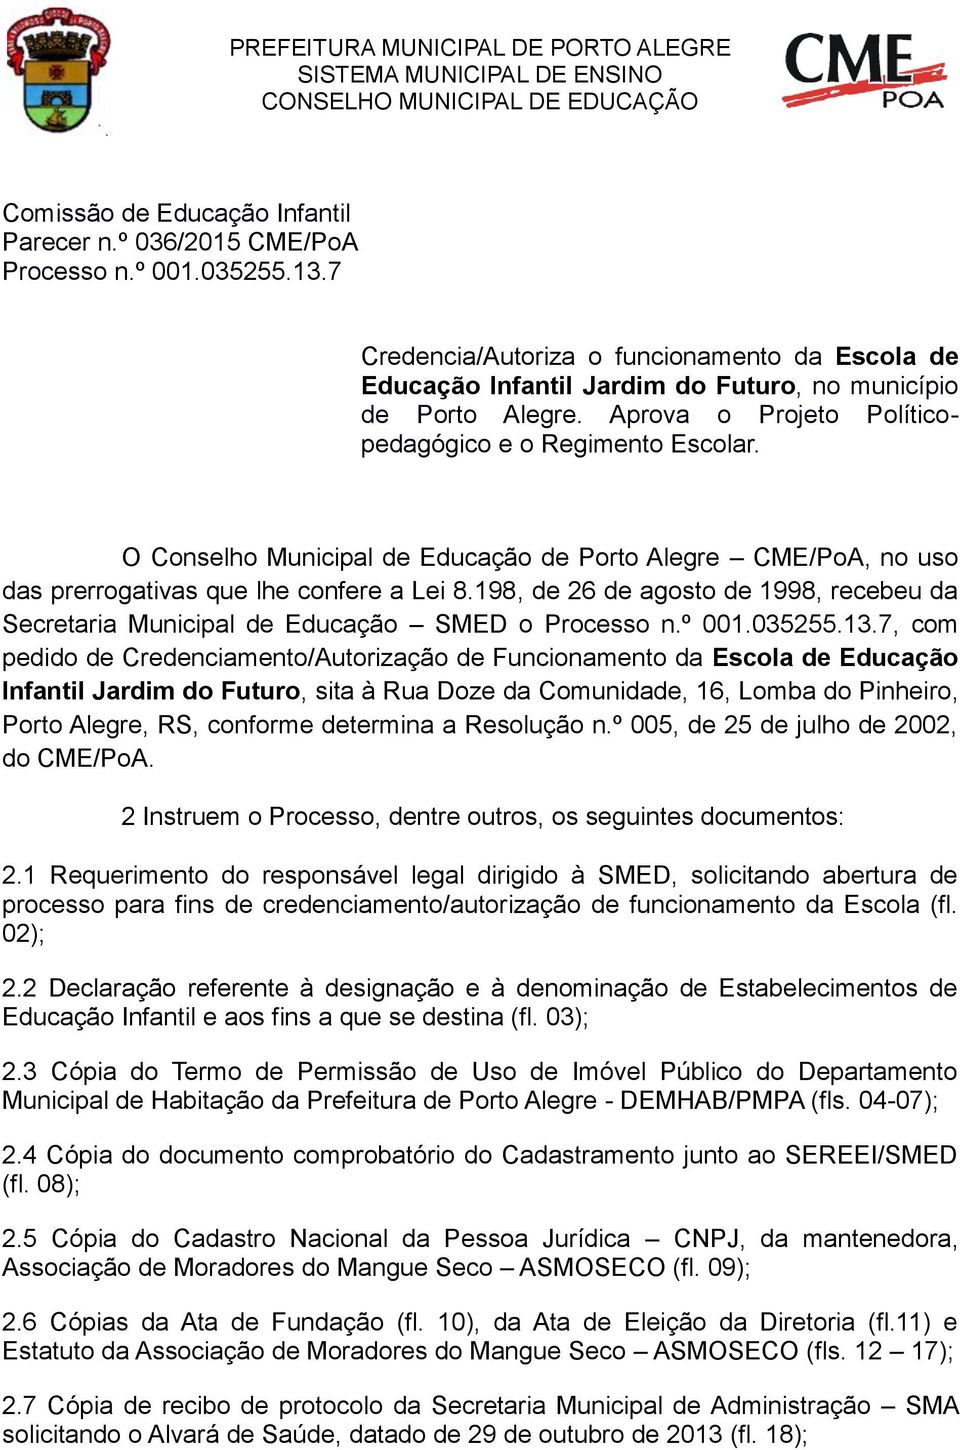 O Conselho Municipal de Educação de Porto Alegre CME/PoA, no uso das prerrogativas que lhe confere a Lei 8.198, de 26 de agosto de 1998, recebeu da Secretaria Municipal de Educação SMED o Processo n.